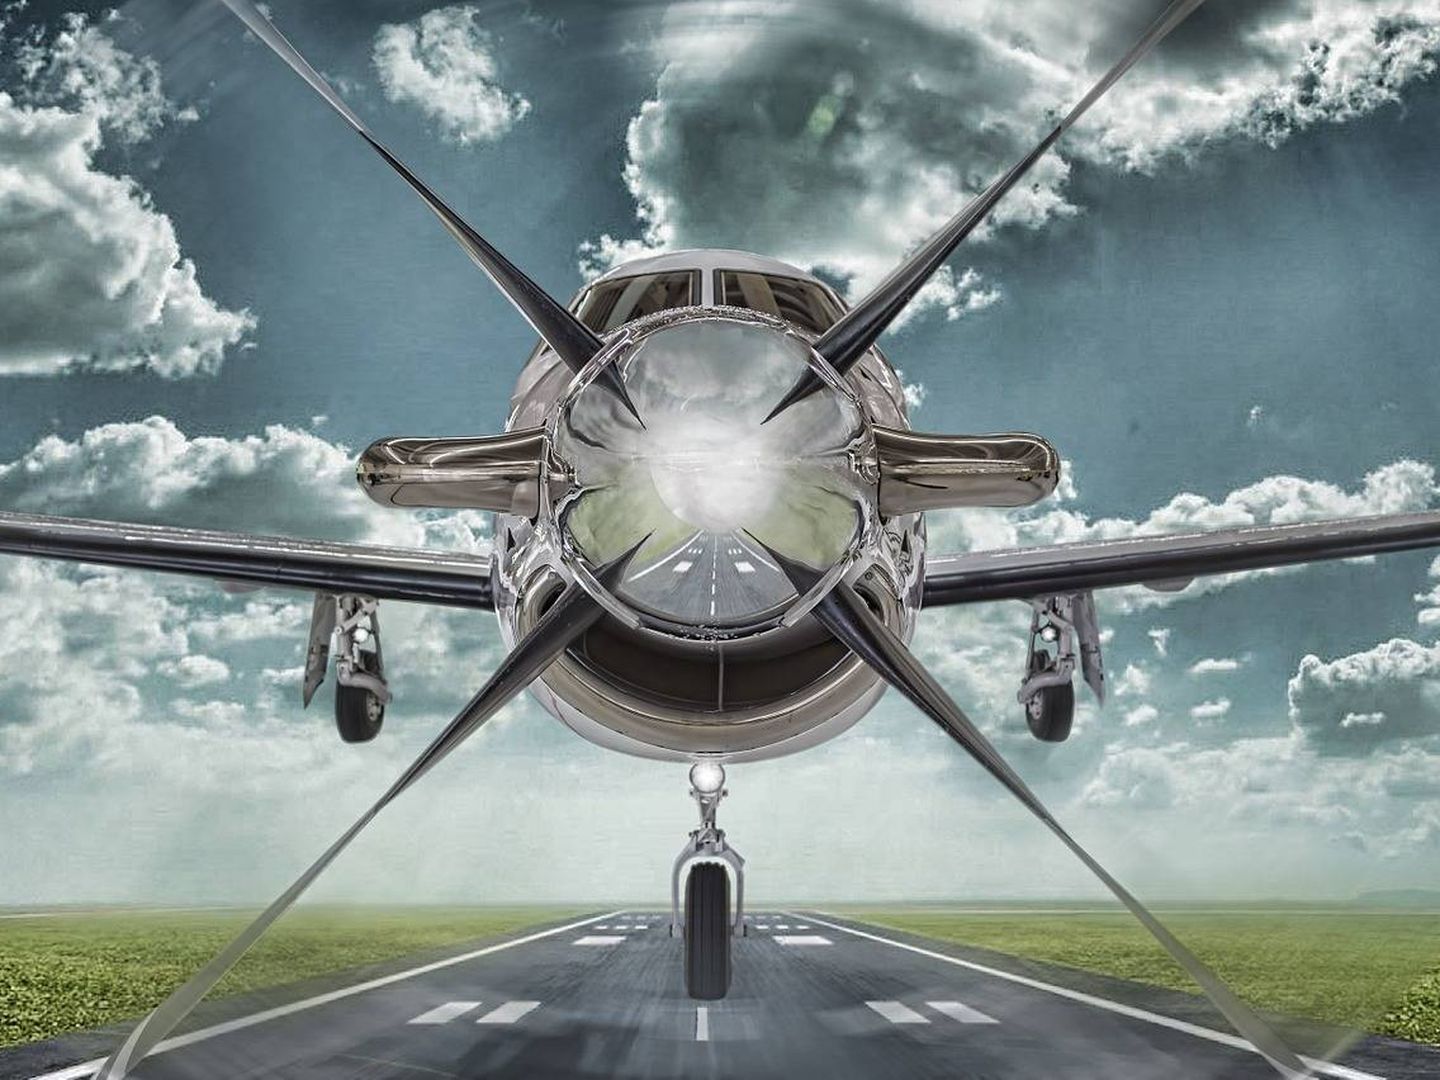 ¿Te montarías en un avión sin comandante? (Pixabay)